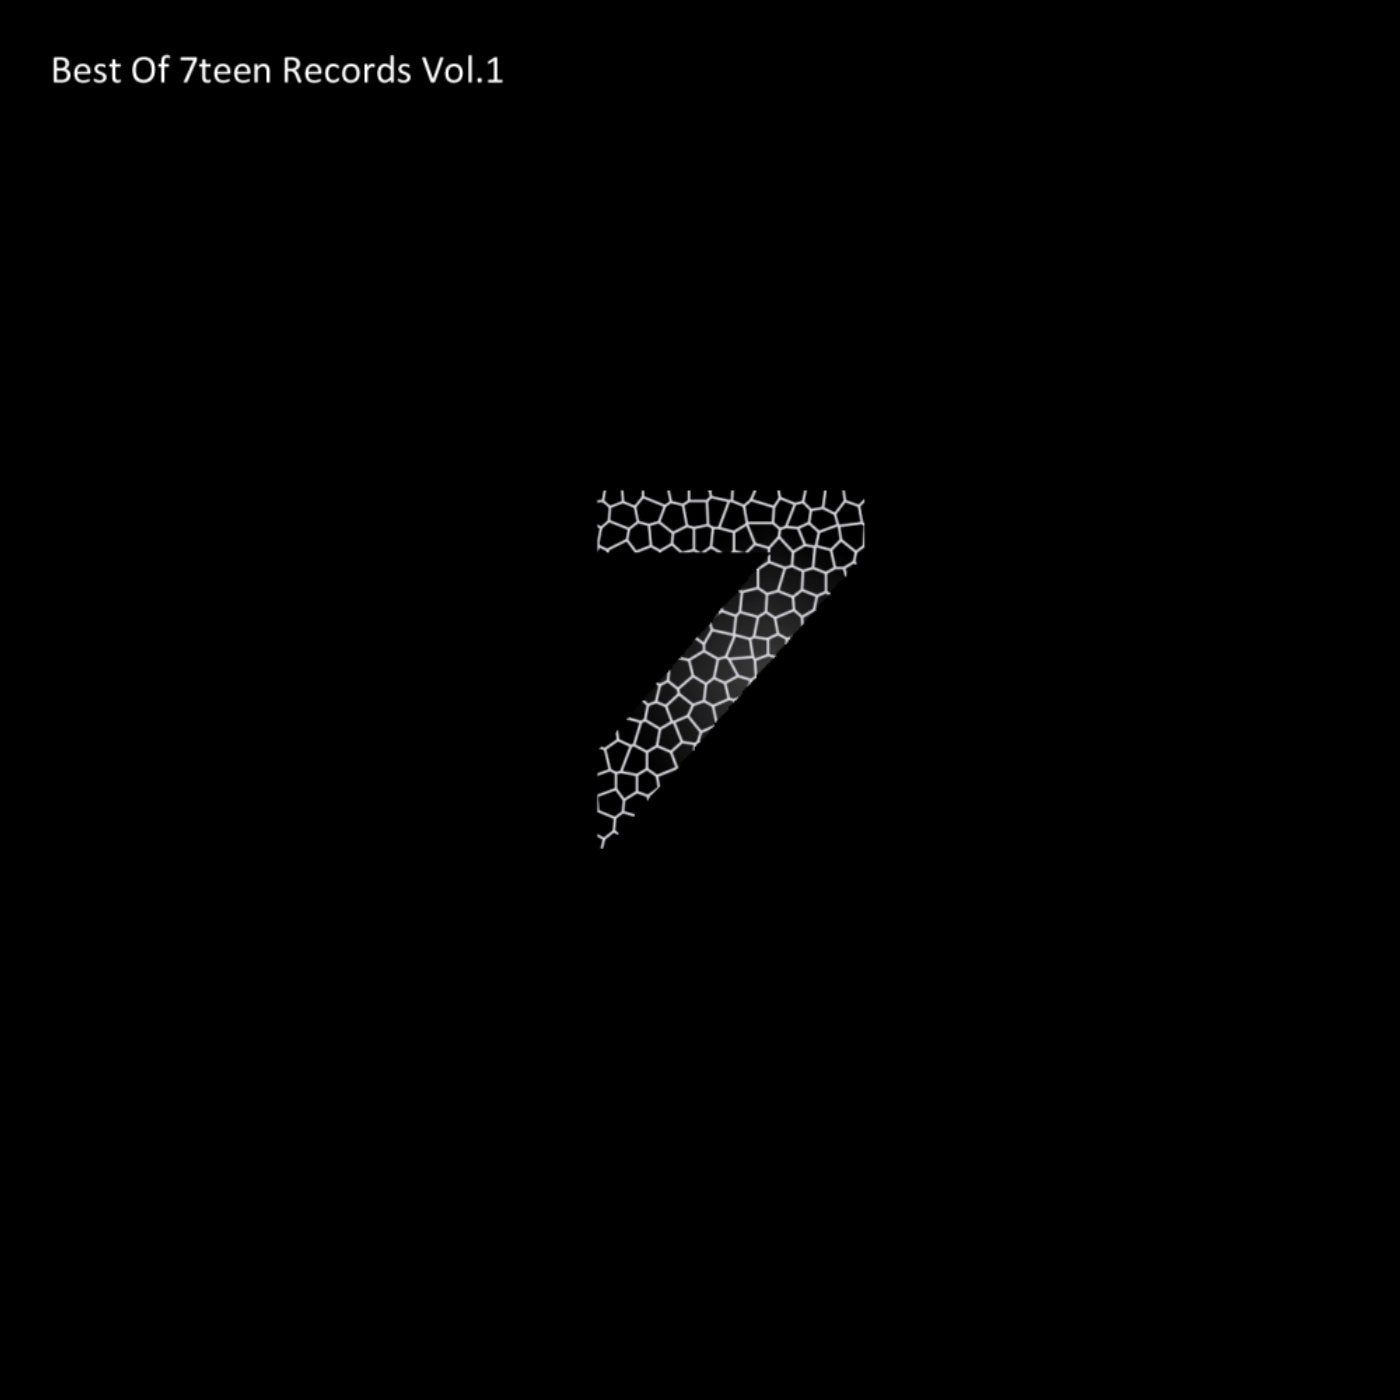 Best Of 7teen Records, Vol. 1